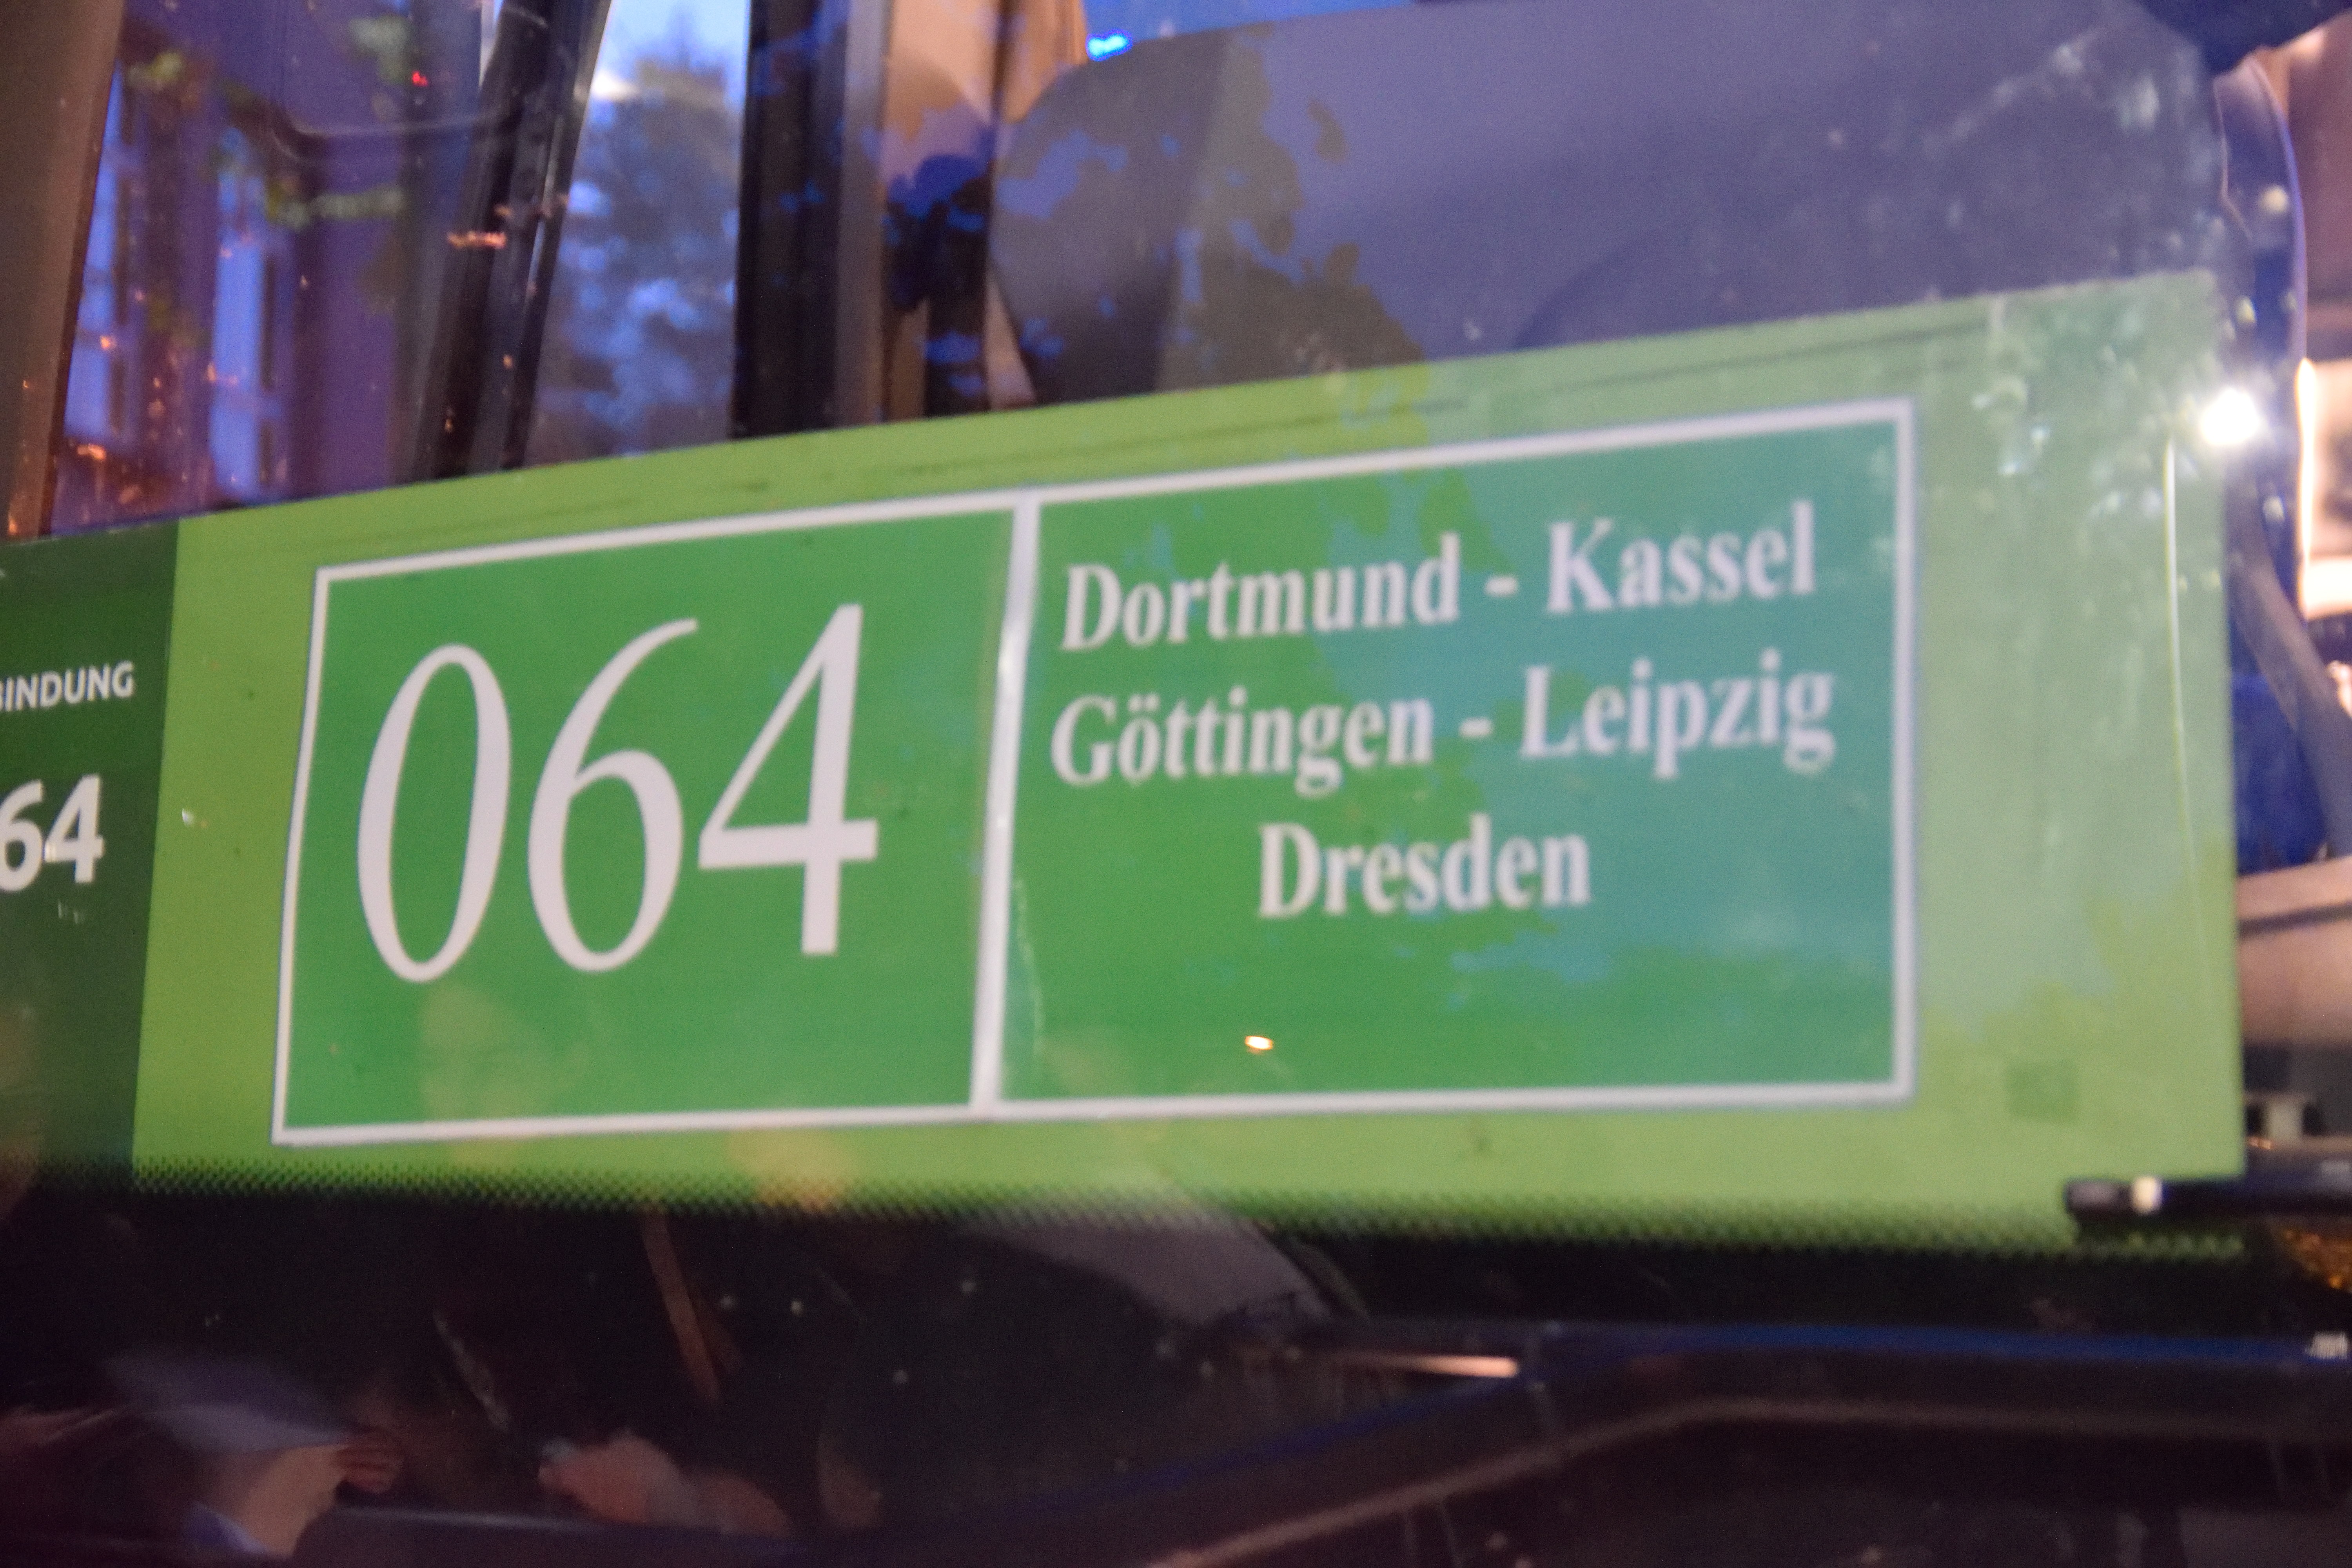 ドレスデン行きの長距離バス